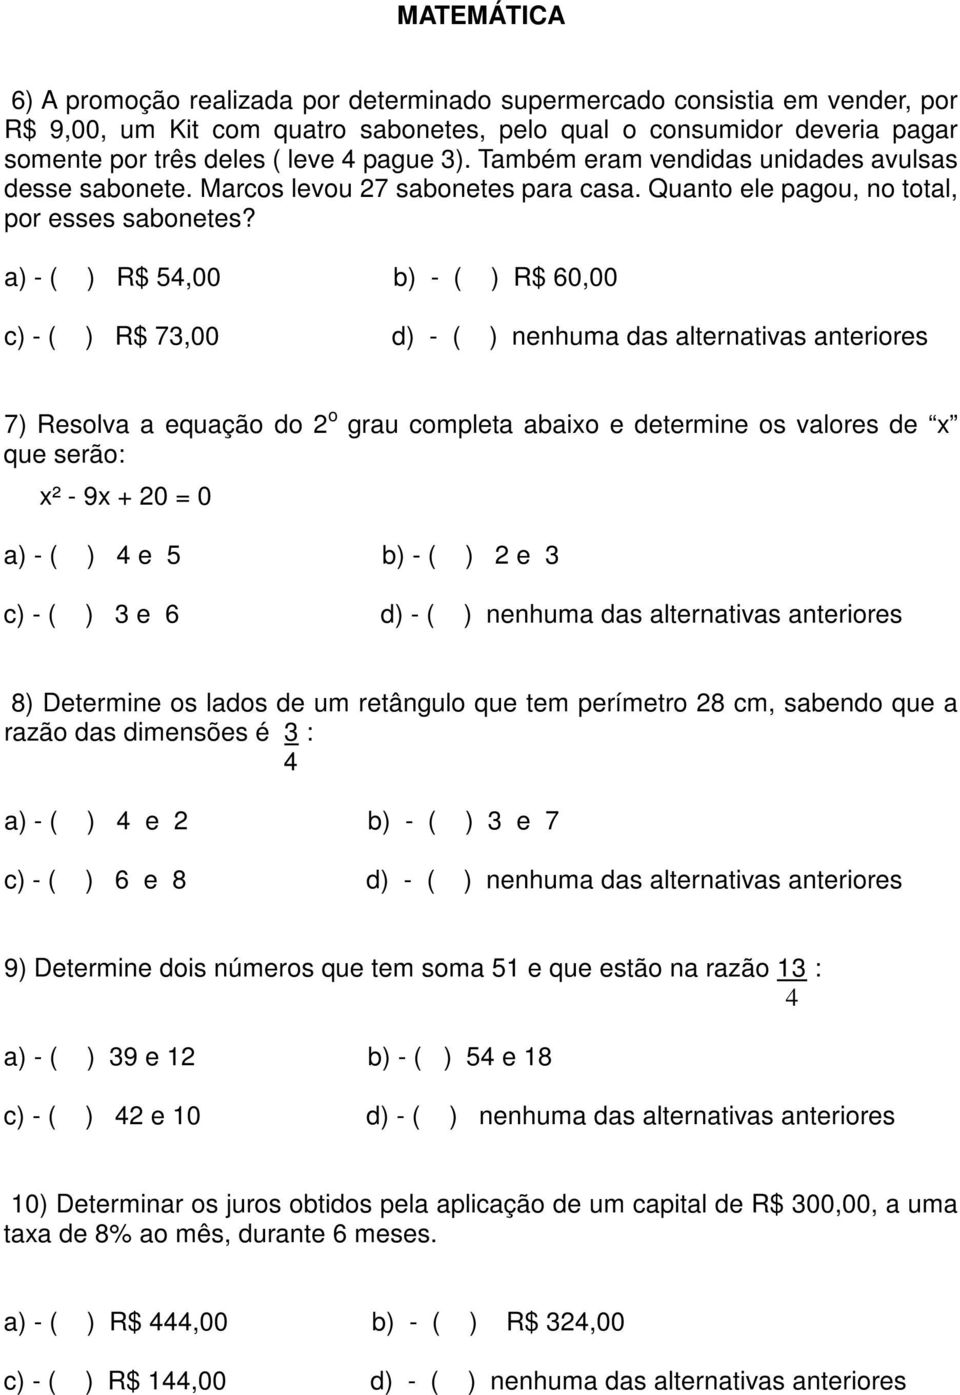 a) - ( ) R$ 54,00 b) - ( ) R$ 60,00 c) - ( ) R$ 73,00 d) - ( ) nenhuma das alternativas anteriores 7) Resolva a equação do 2 o grau completa abaixo e determine os valores de x que serão: x² - 9x + 20